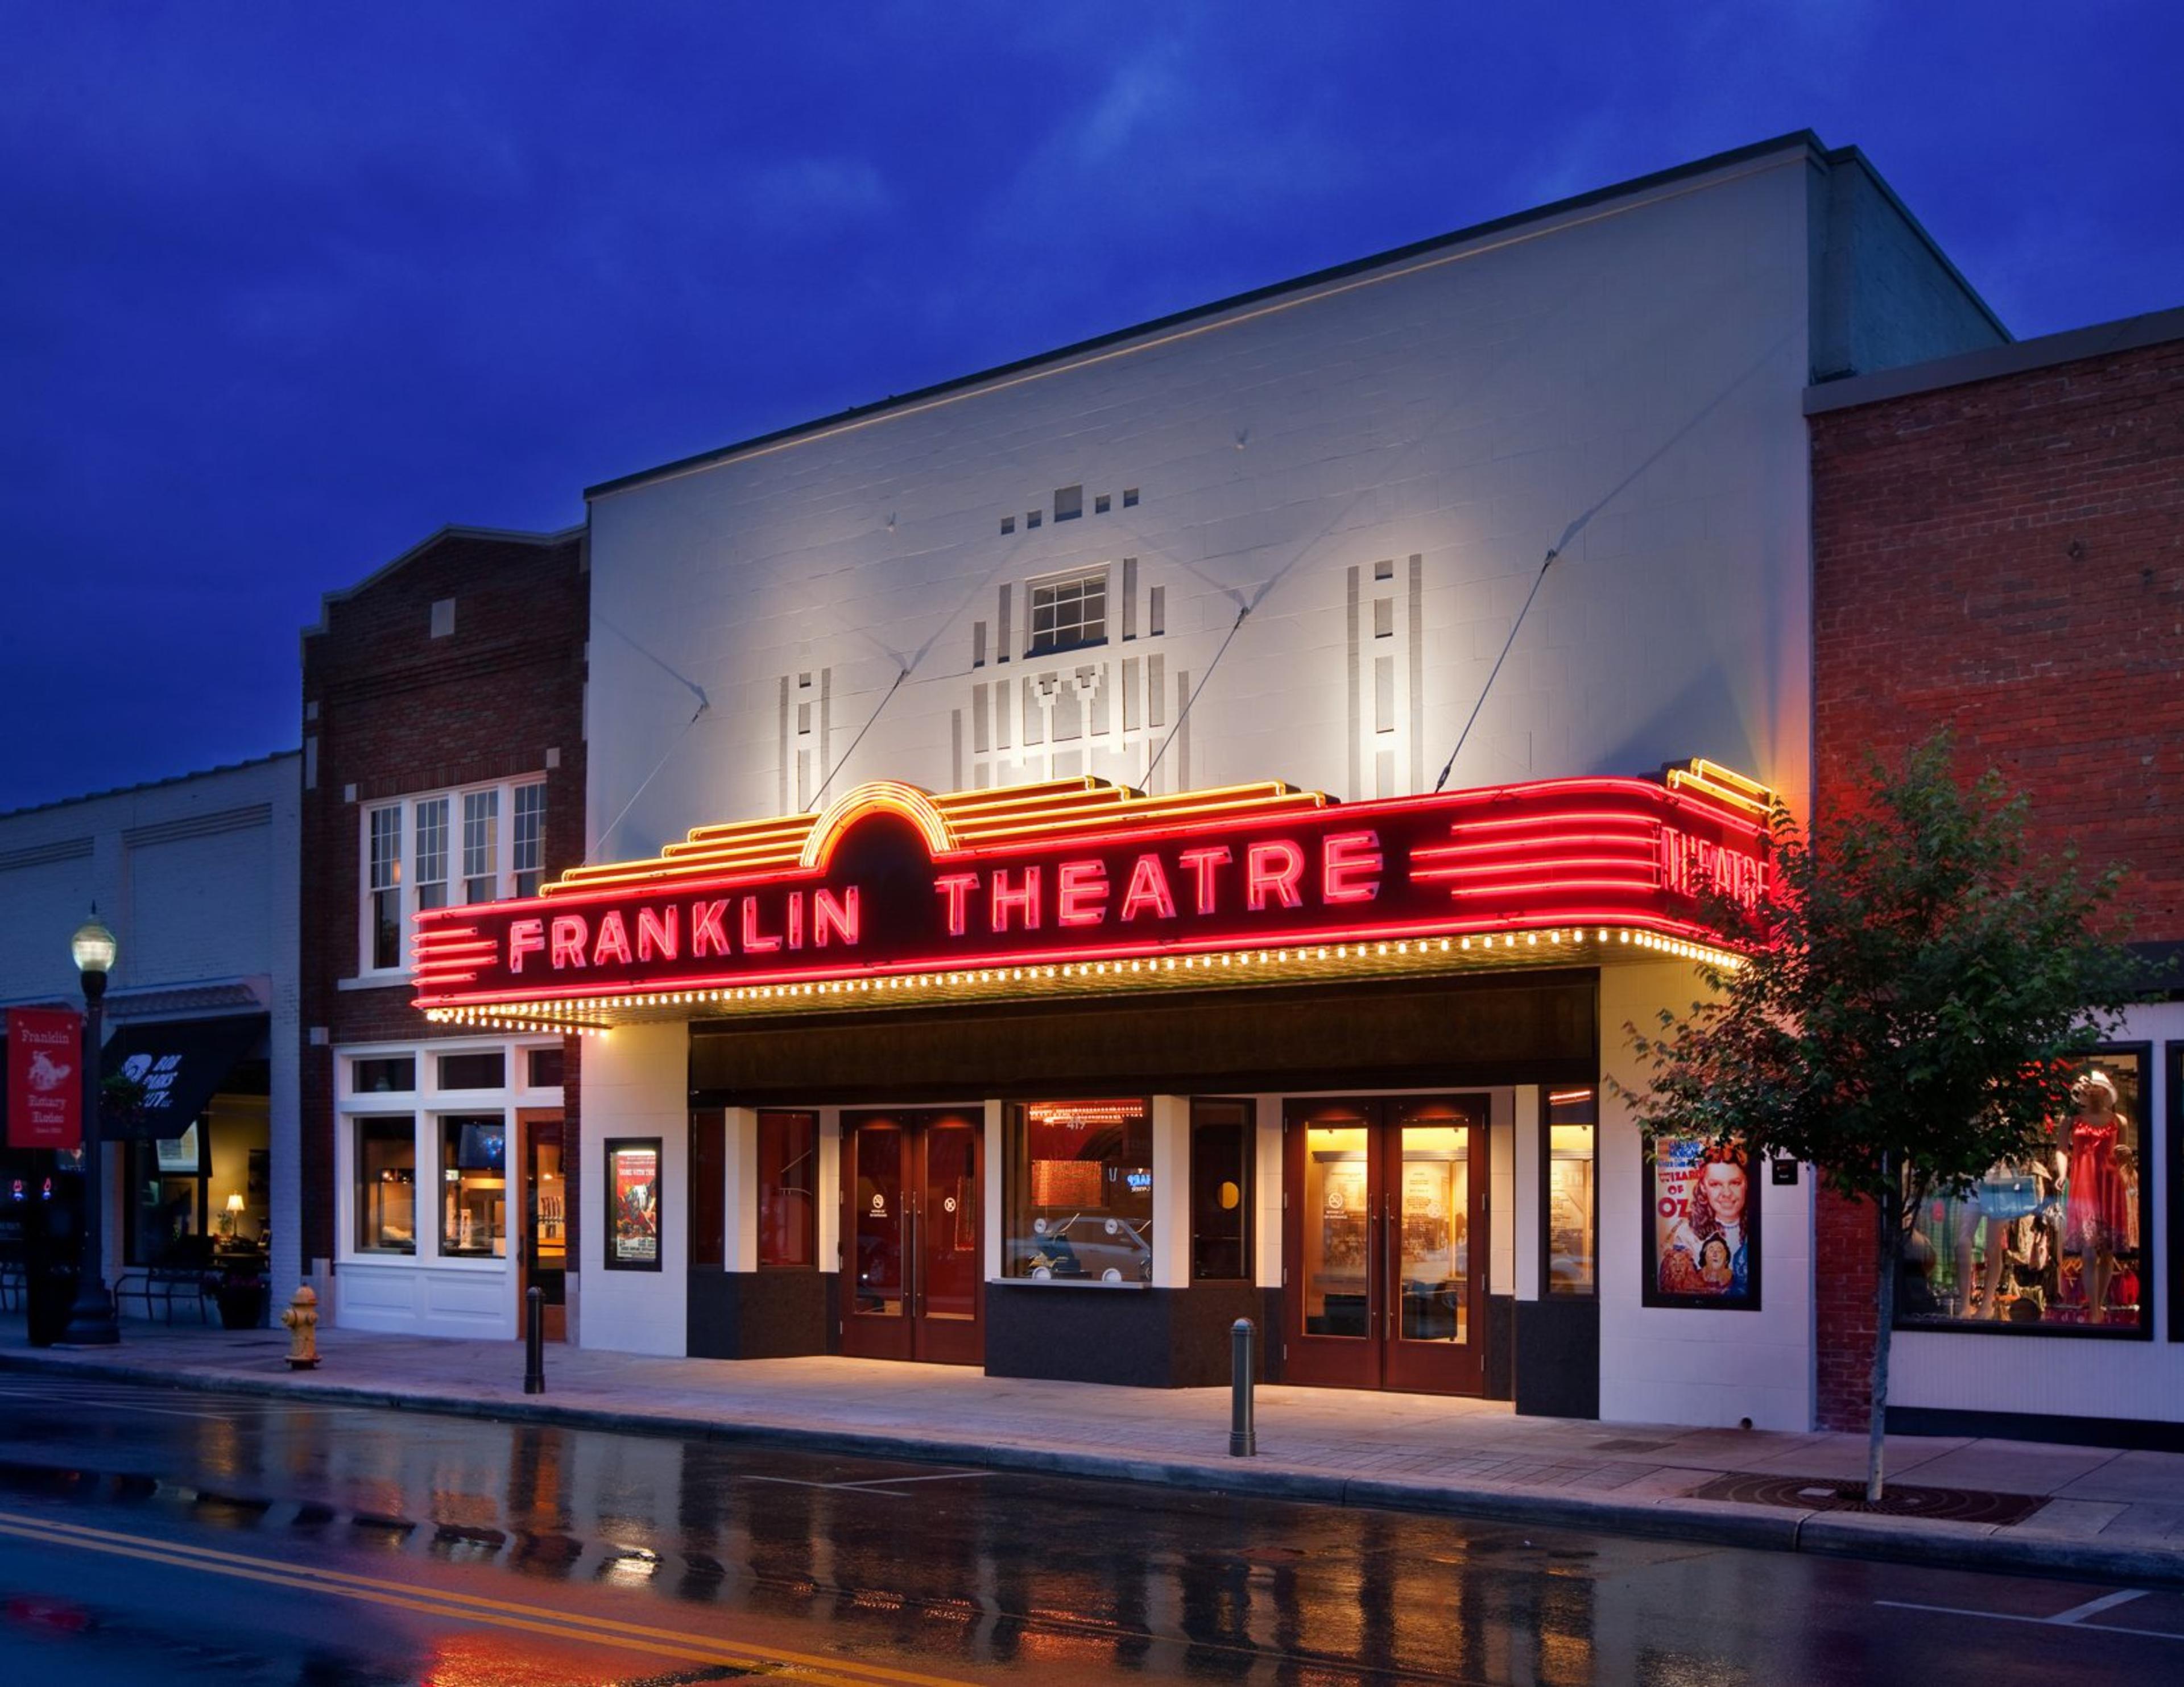 The Franklin Theatre